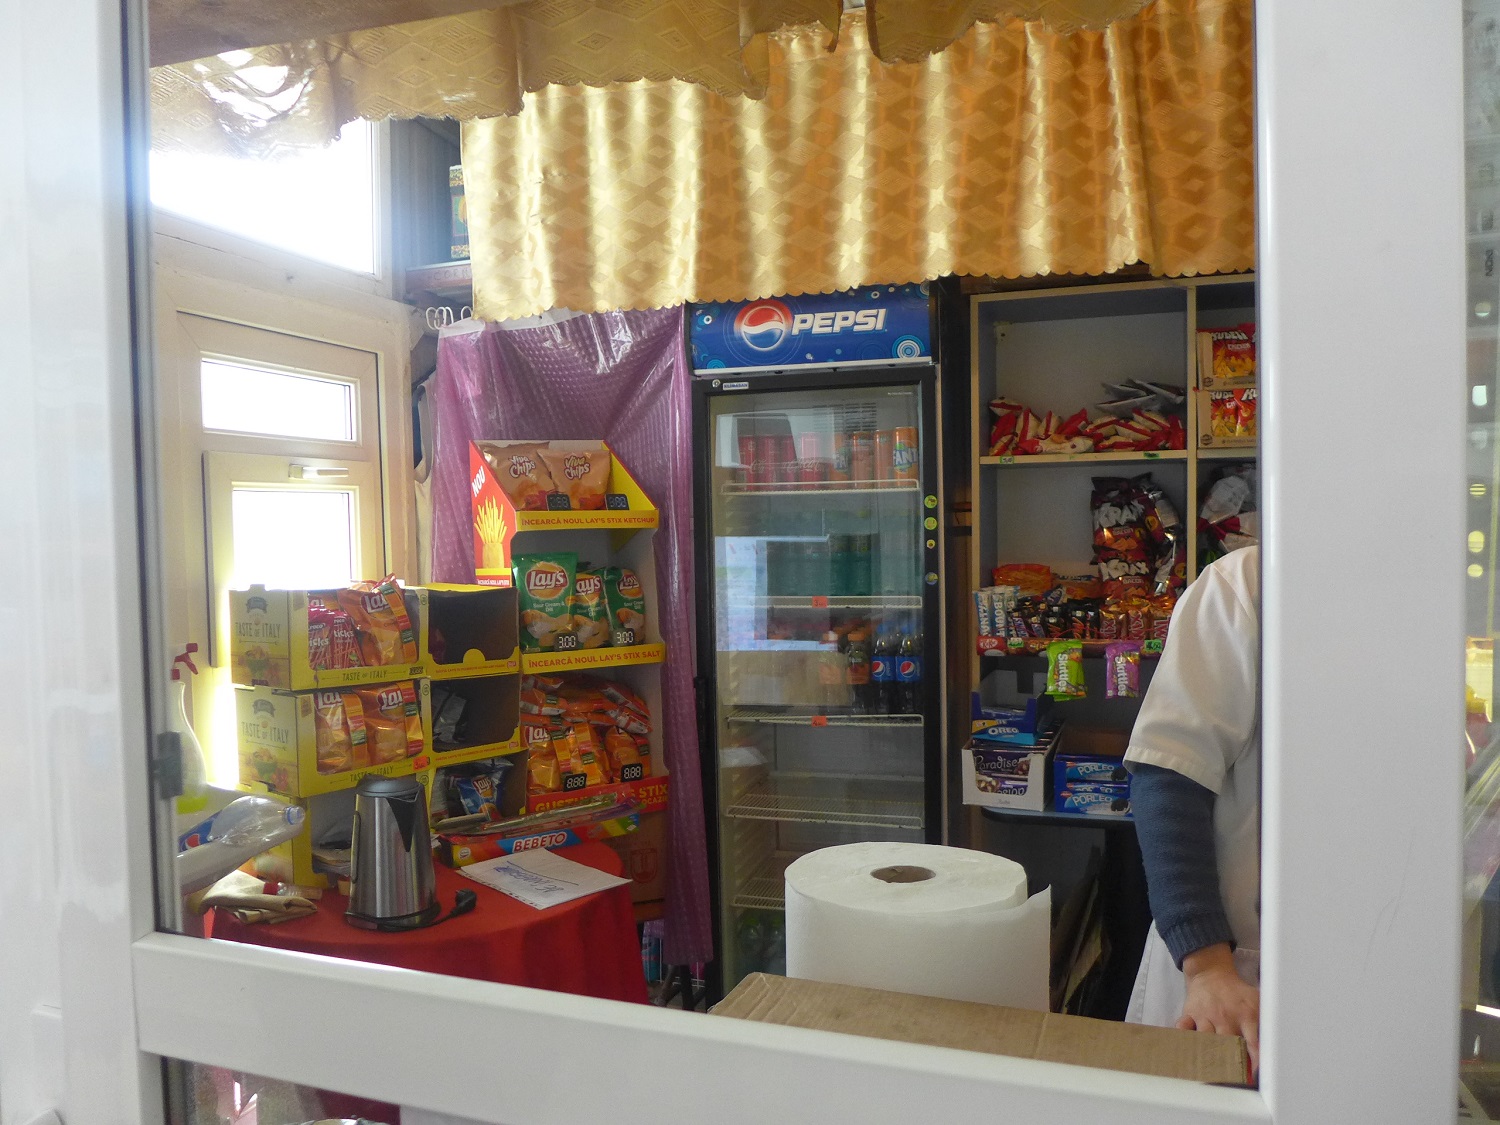 A l’intérieur de l’école, il y a un petit magasin où les élèves peuvent acheter de quoi grignoter et boire.